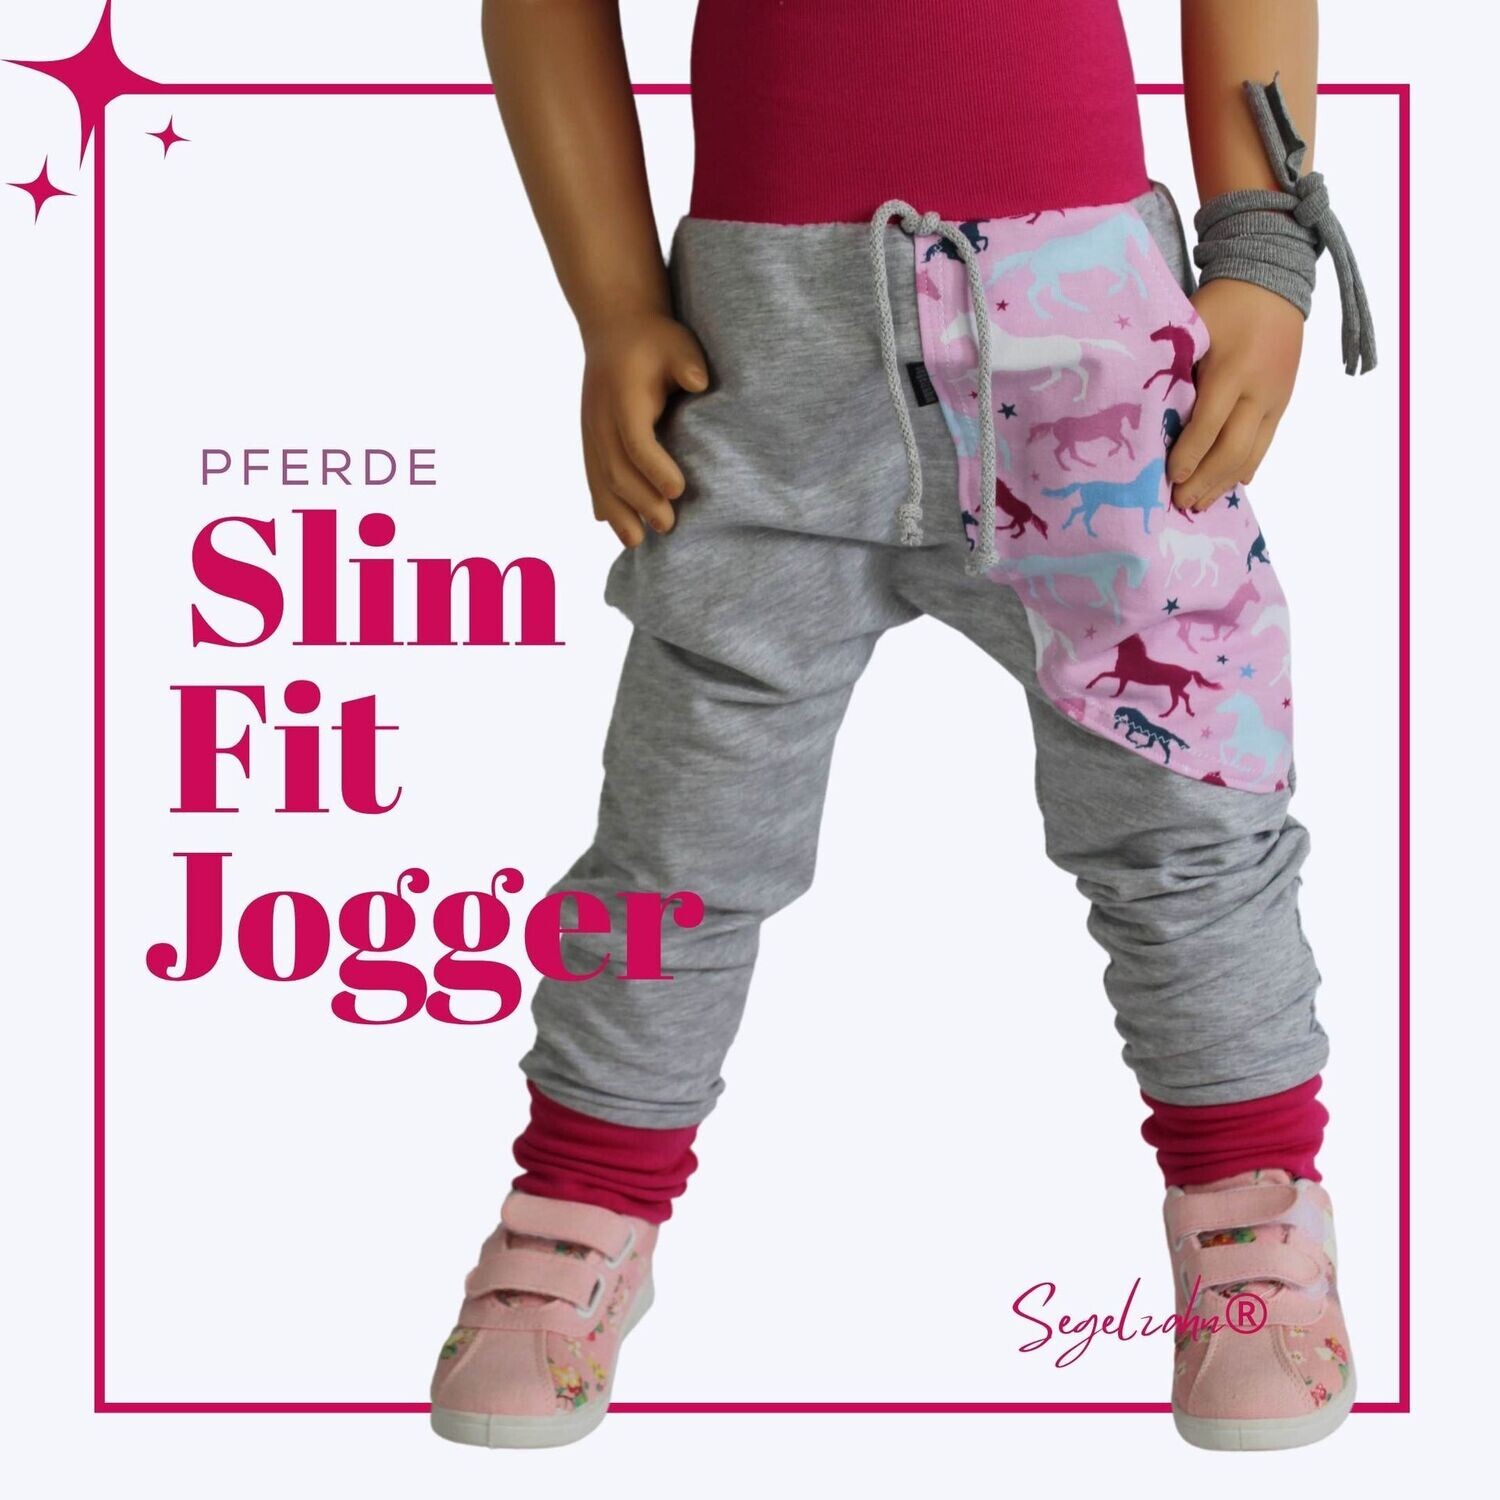 Slim Fit Jogger Mädchen / Pferde / Sweat Hose Kind Baby / Grau / Segelzahn / Jogginghose / Kinderkleidung / Pferd / Hosen für Mädchen